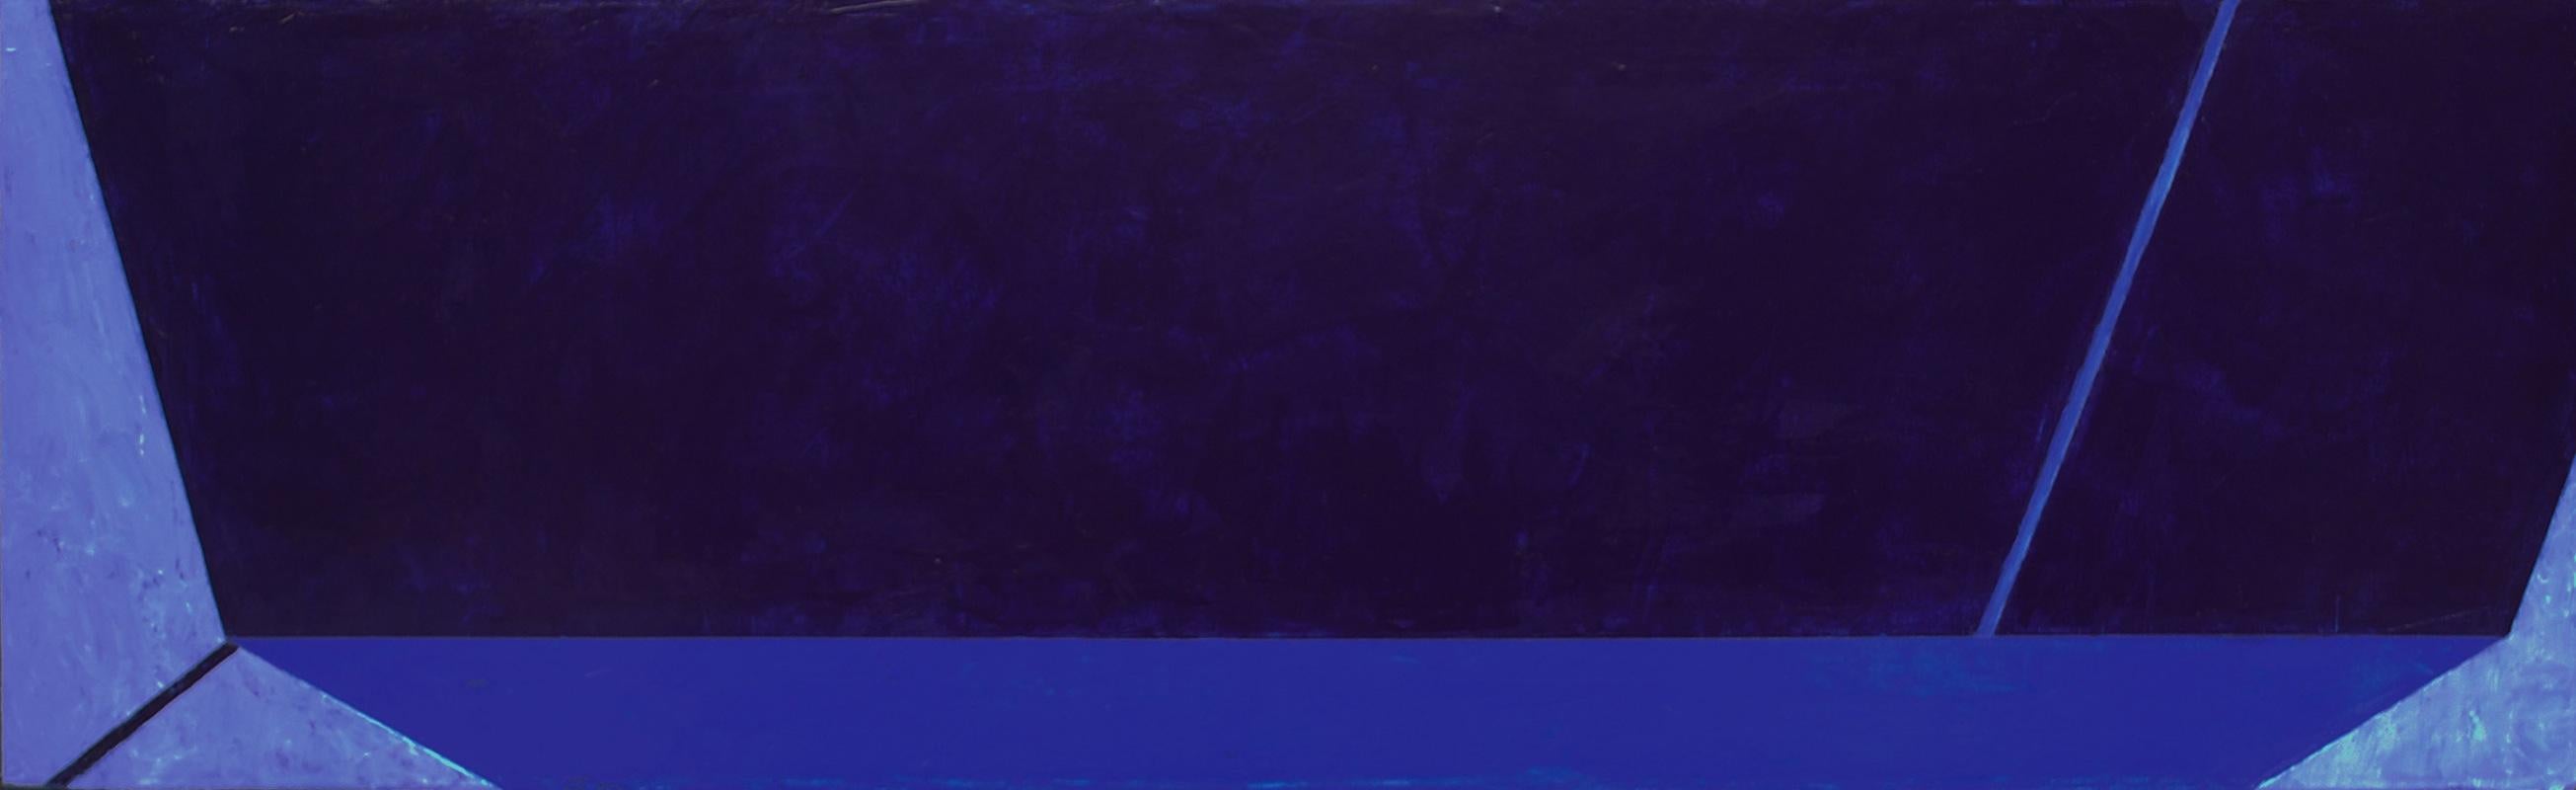 Macyn Bolt, Dark Pool IV, acrylic on canvas, Minimalist, 18 x 60, 2018 For Sale 3